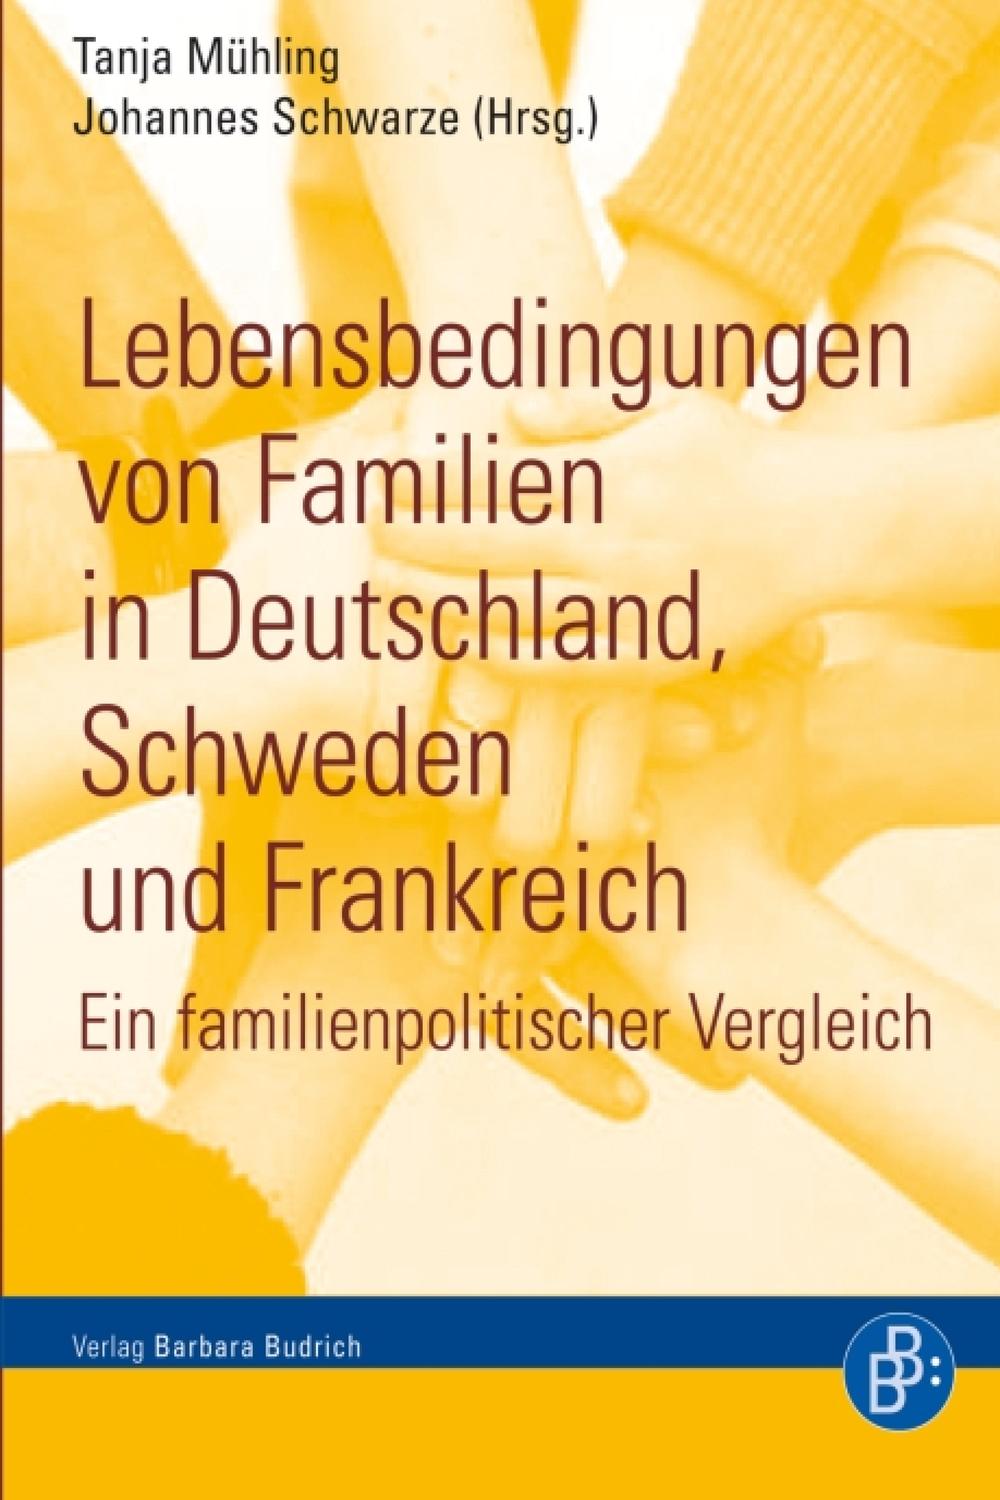 Lebensbedingungen von Familien in Deutschland, Schweden und Frankreich - Tanja Mühling, Johannes Schwarze